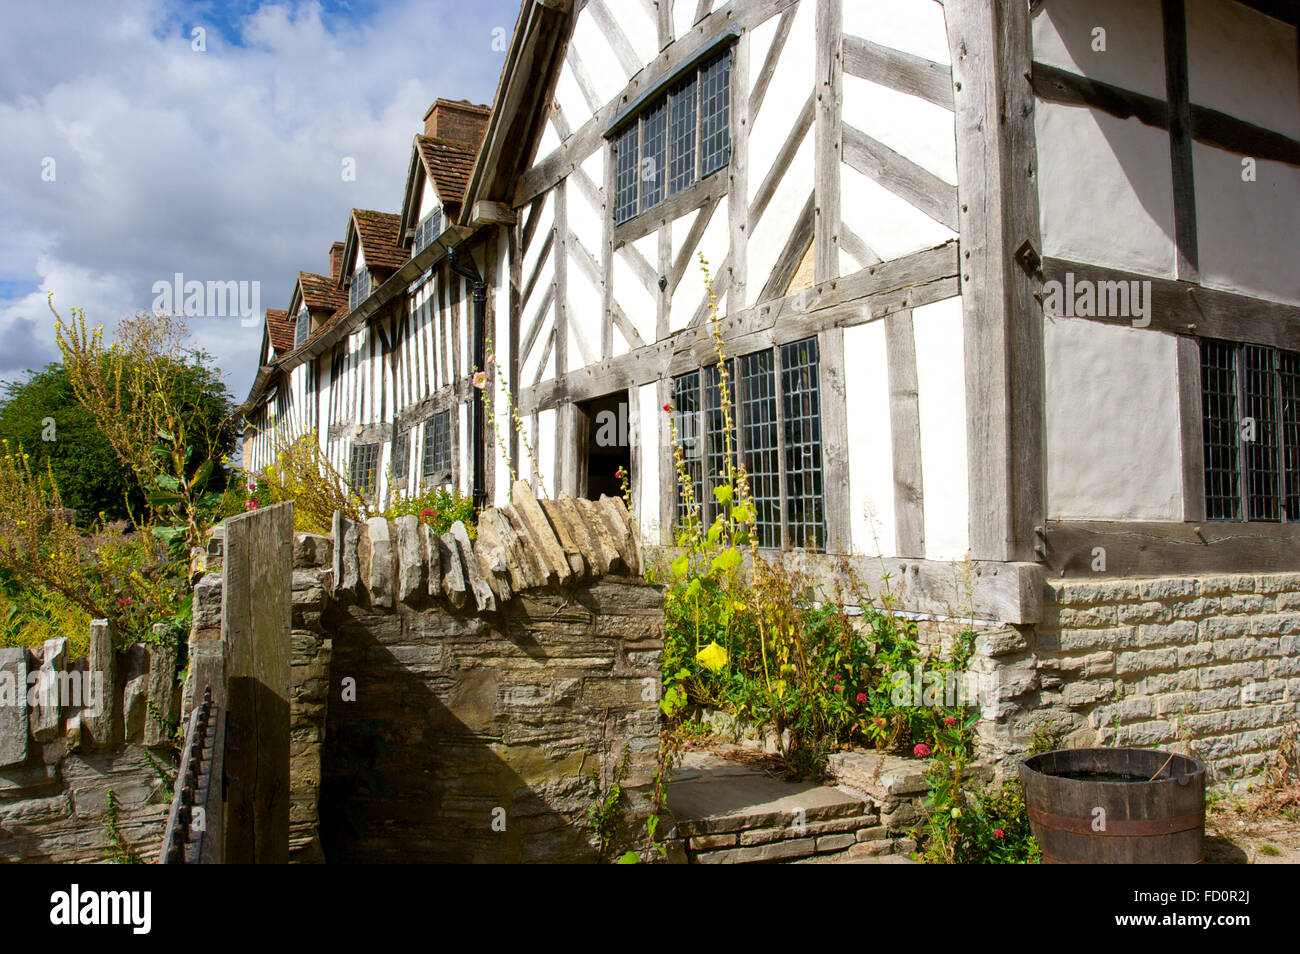 Mary Arden’s Farm était autrefois la maison de William Shakespeare à Stratford-upon-Avon, au Royaume-Uni Banque D'Images